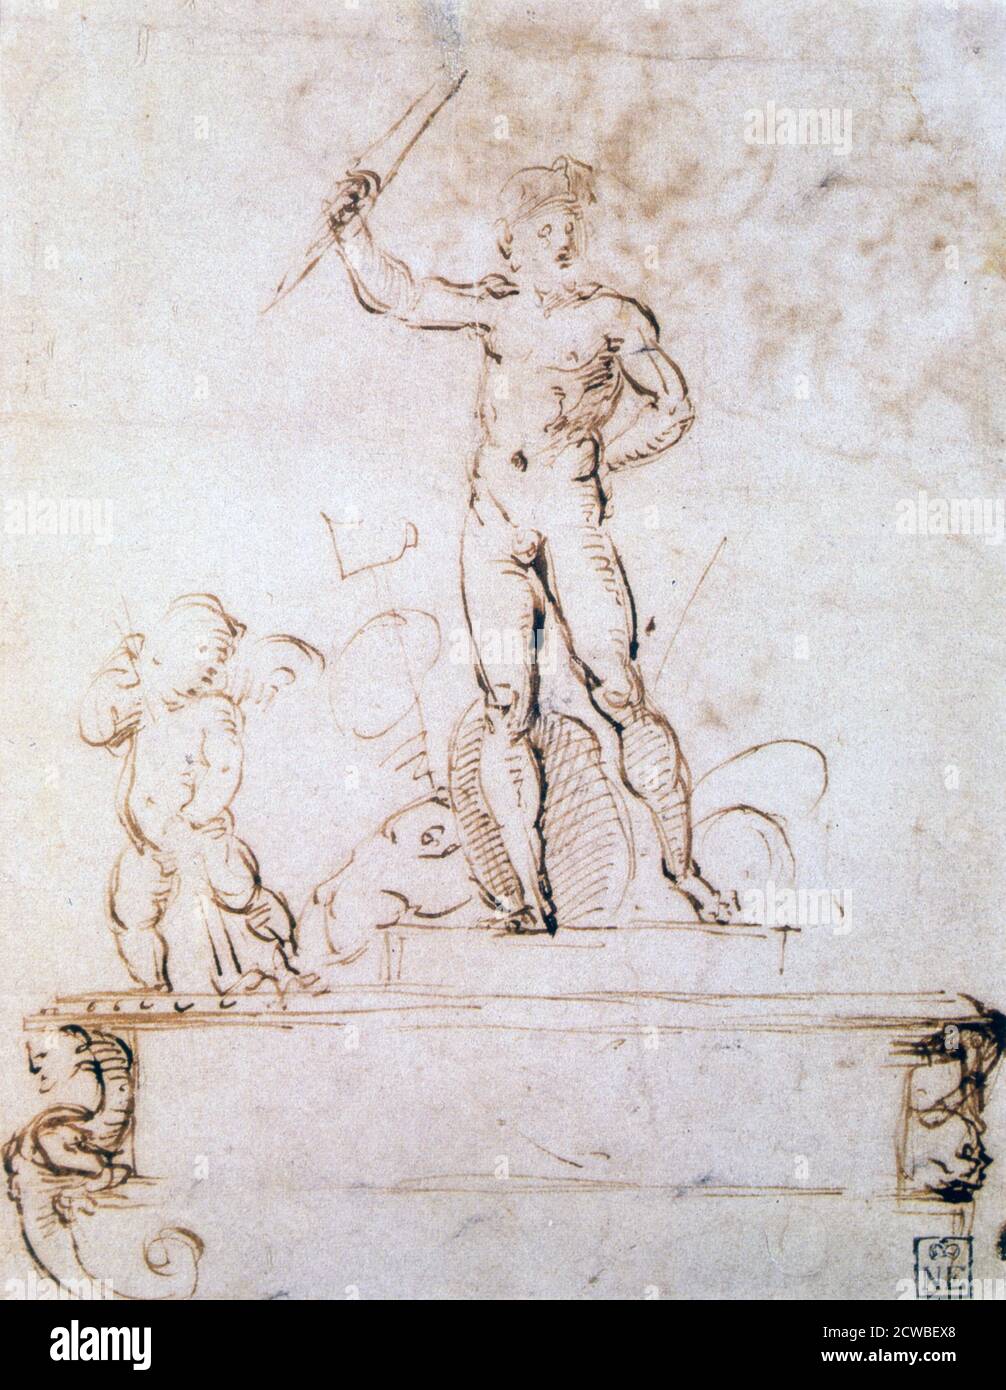 Skizzieren Komposition für eine Dekoration eines Festivals, c1500-1520. Künstler: Raphael. Raphael (1483-1520) war ein italienischer Maler und Architekt der Hochrenaissance. Seine Arbeit wird für seine Klarheit der Form, Leichtigkeit der Komposition und visuelle Leistung der menschlichen Größe bewundert. Stockfoto